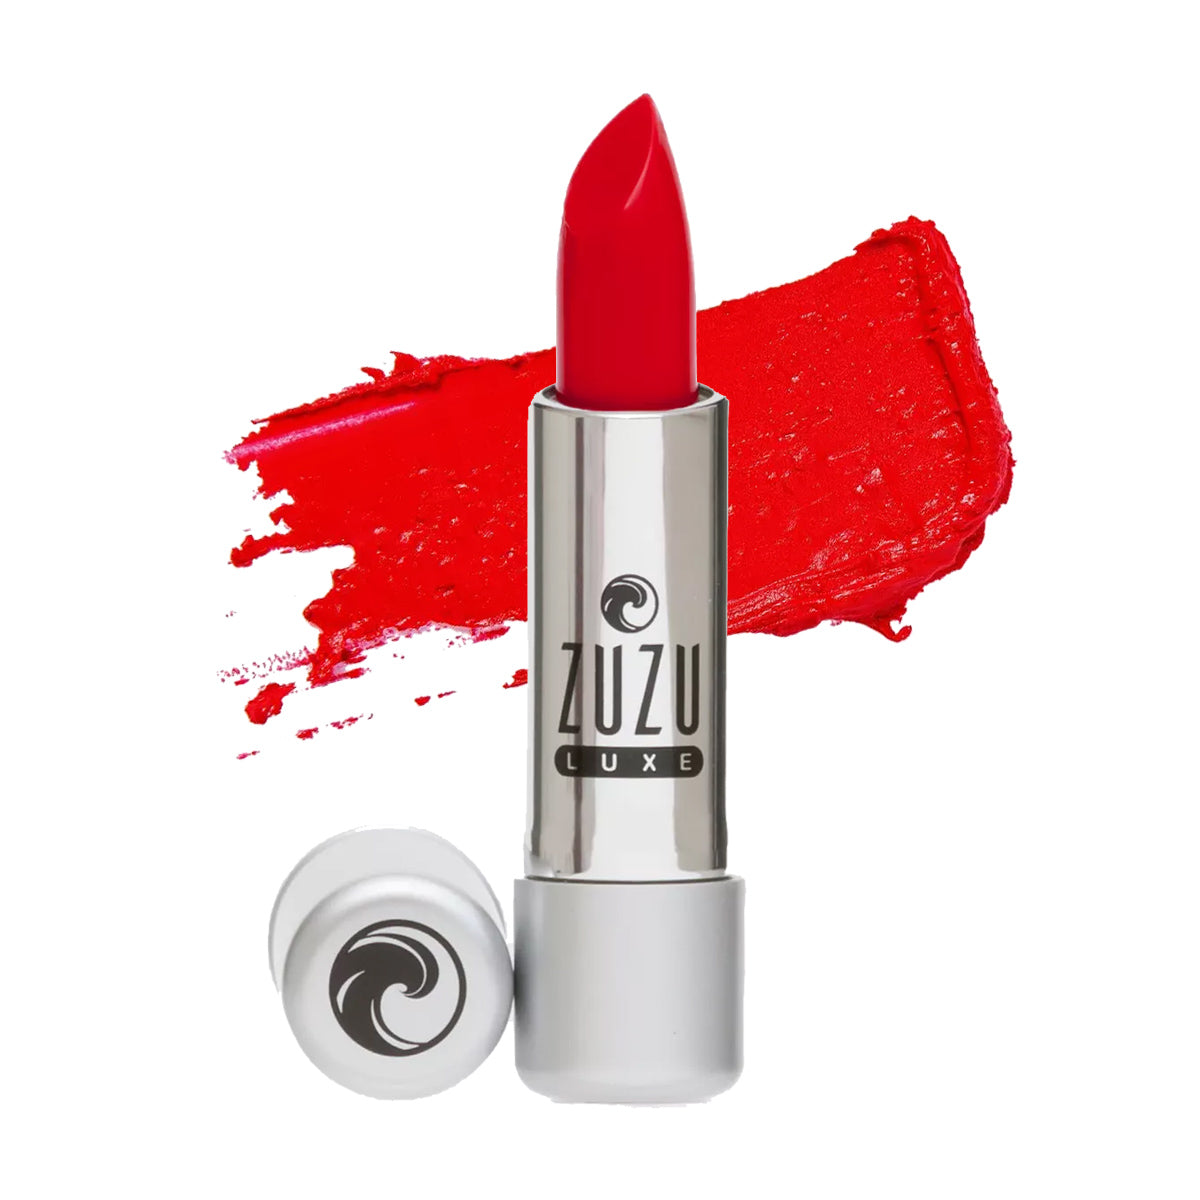 Zuzu Luxe Lipstick - Starlet with Swatch